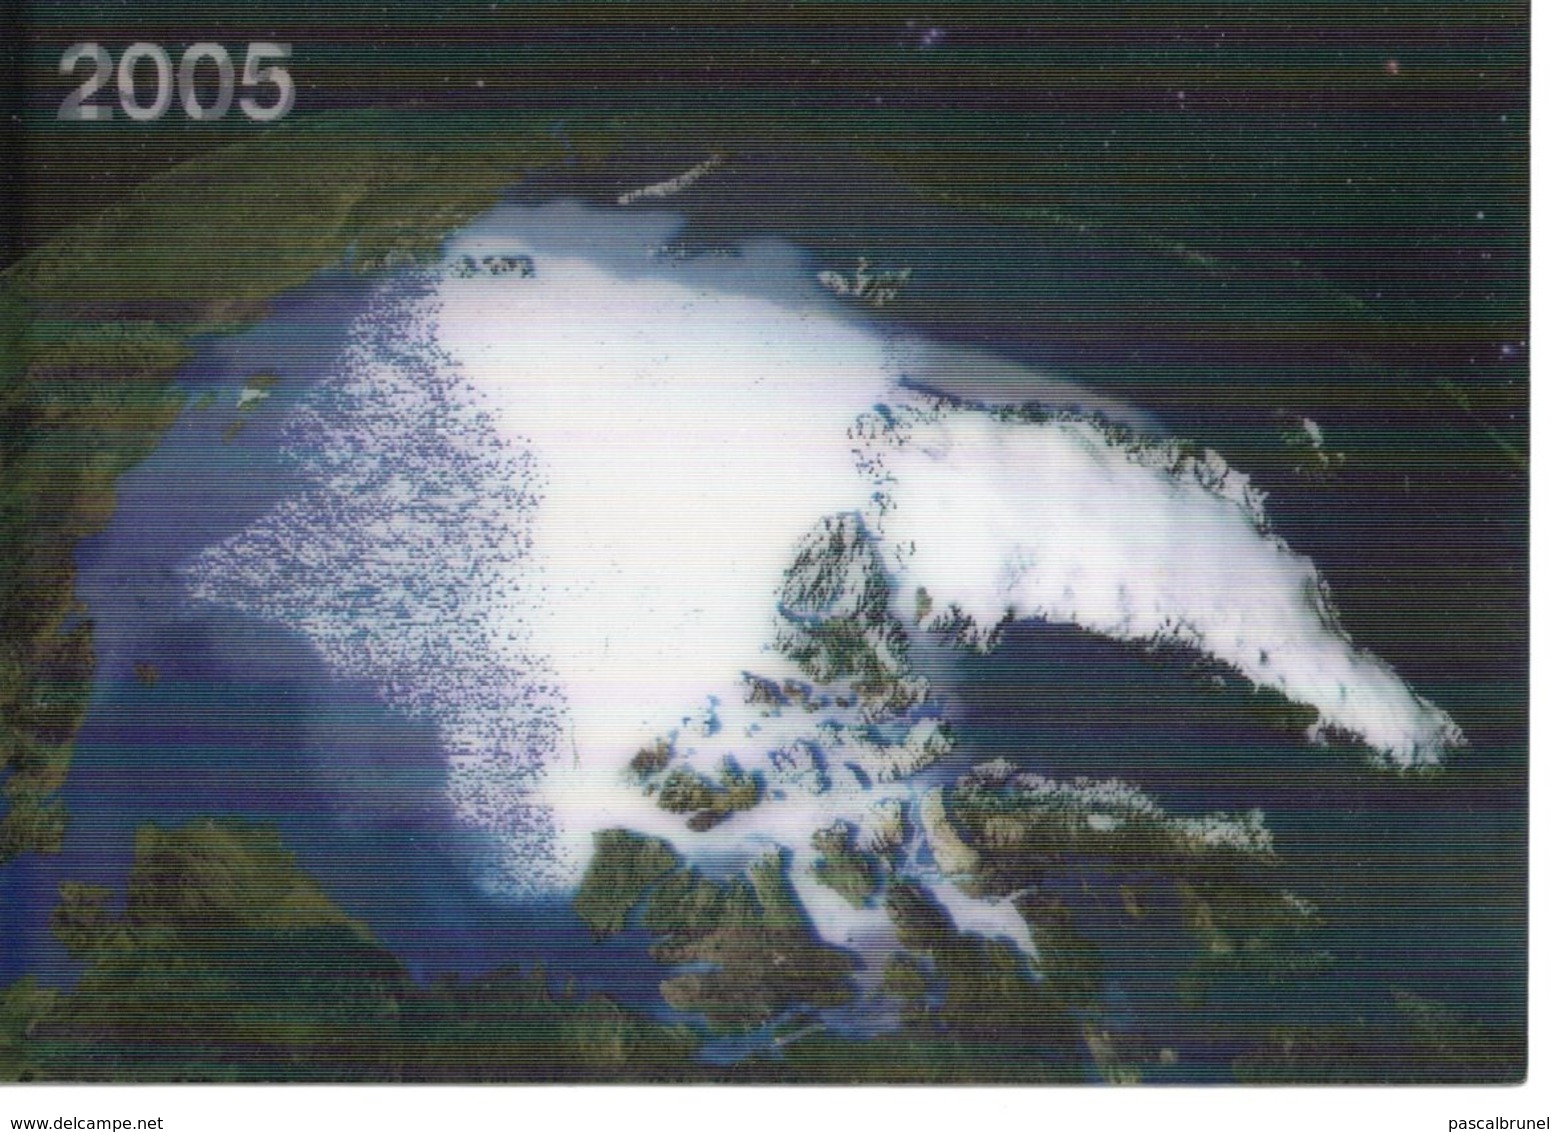 VERNIER - PLAN D'ACTION CLIMAT DU WWF -1979- 2005- LES CHANGEMENTS CLIMATIQUES FONT FONDRE LES NEIGES ETERNELLES - Vernier